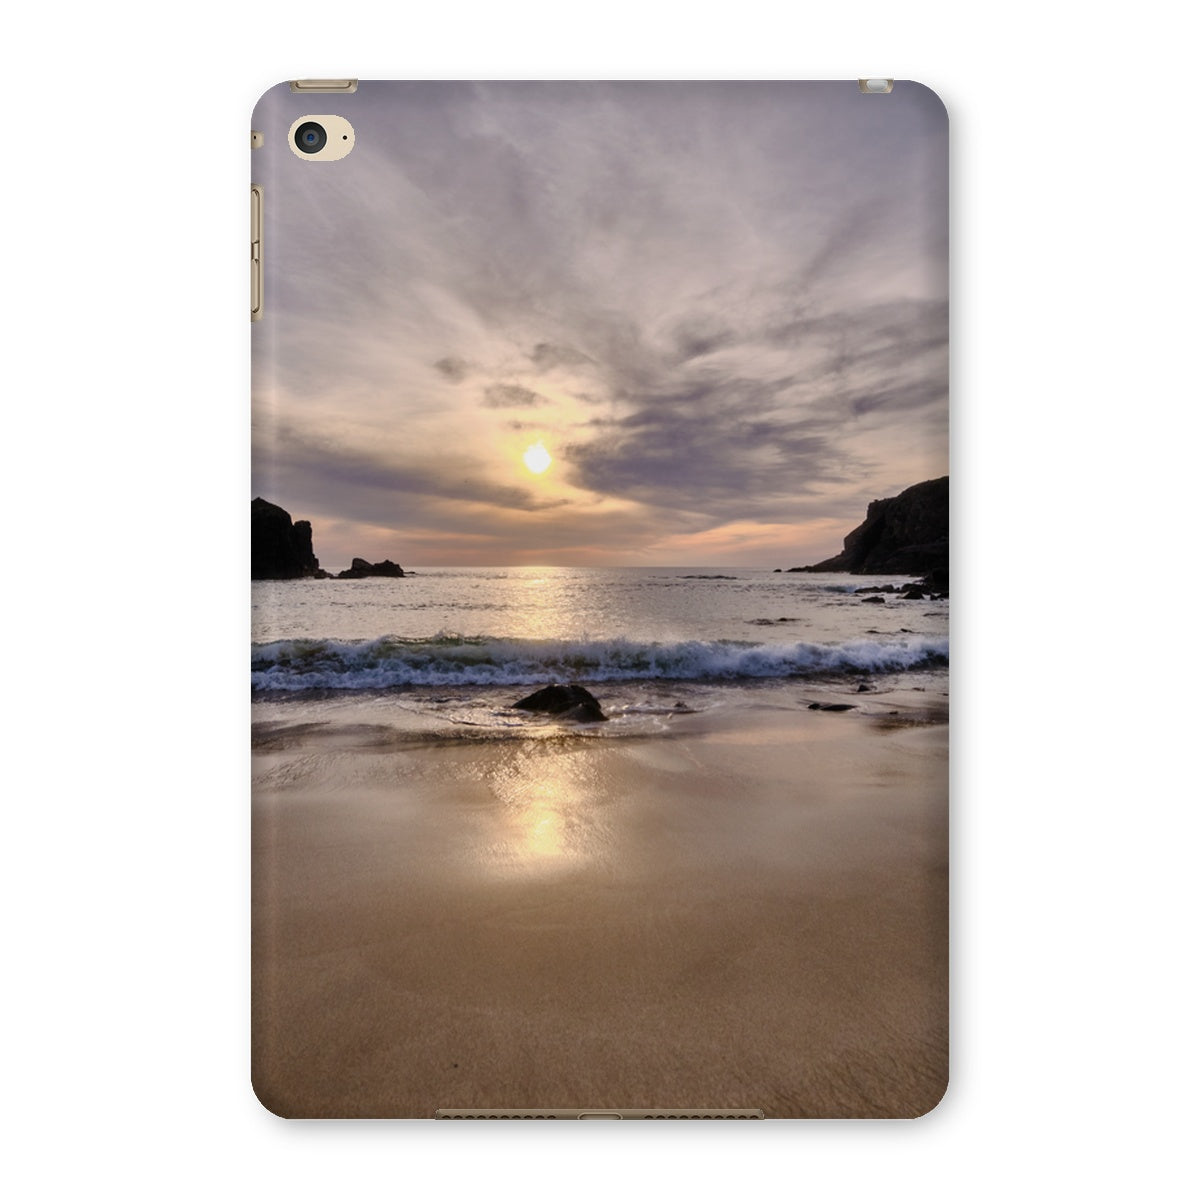 Dalbeg Beach Sunset Tablet Cases